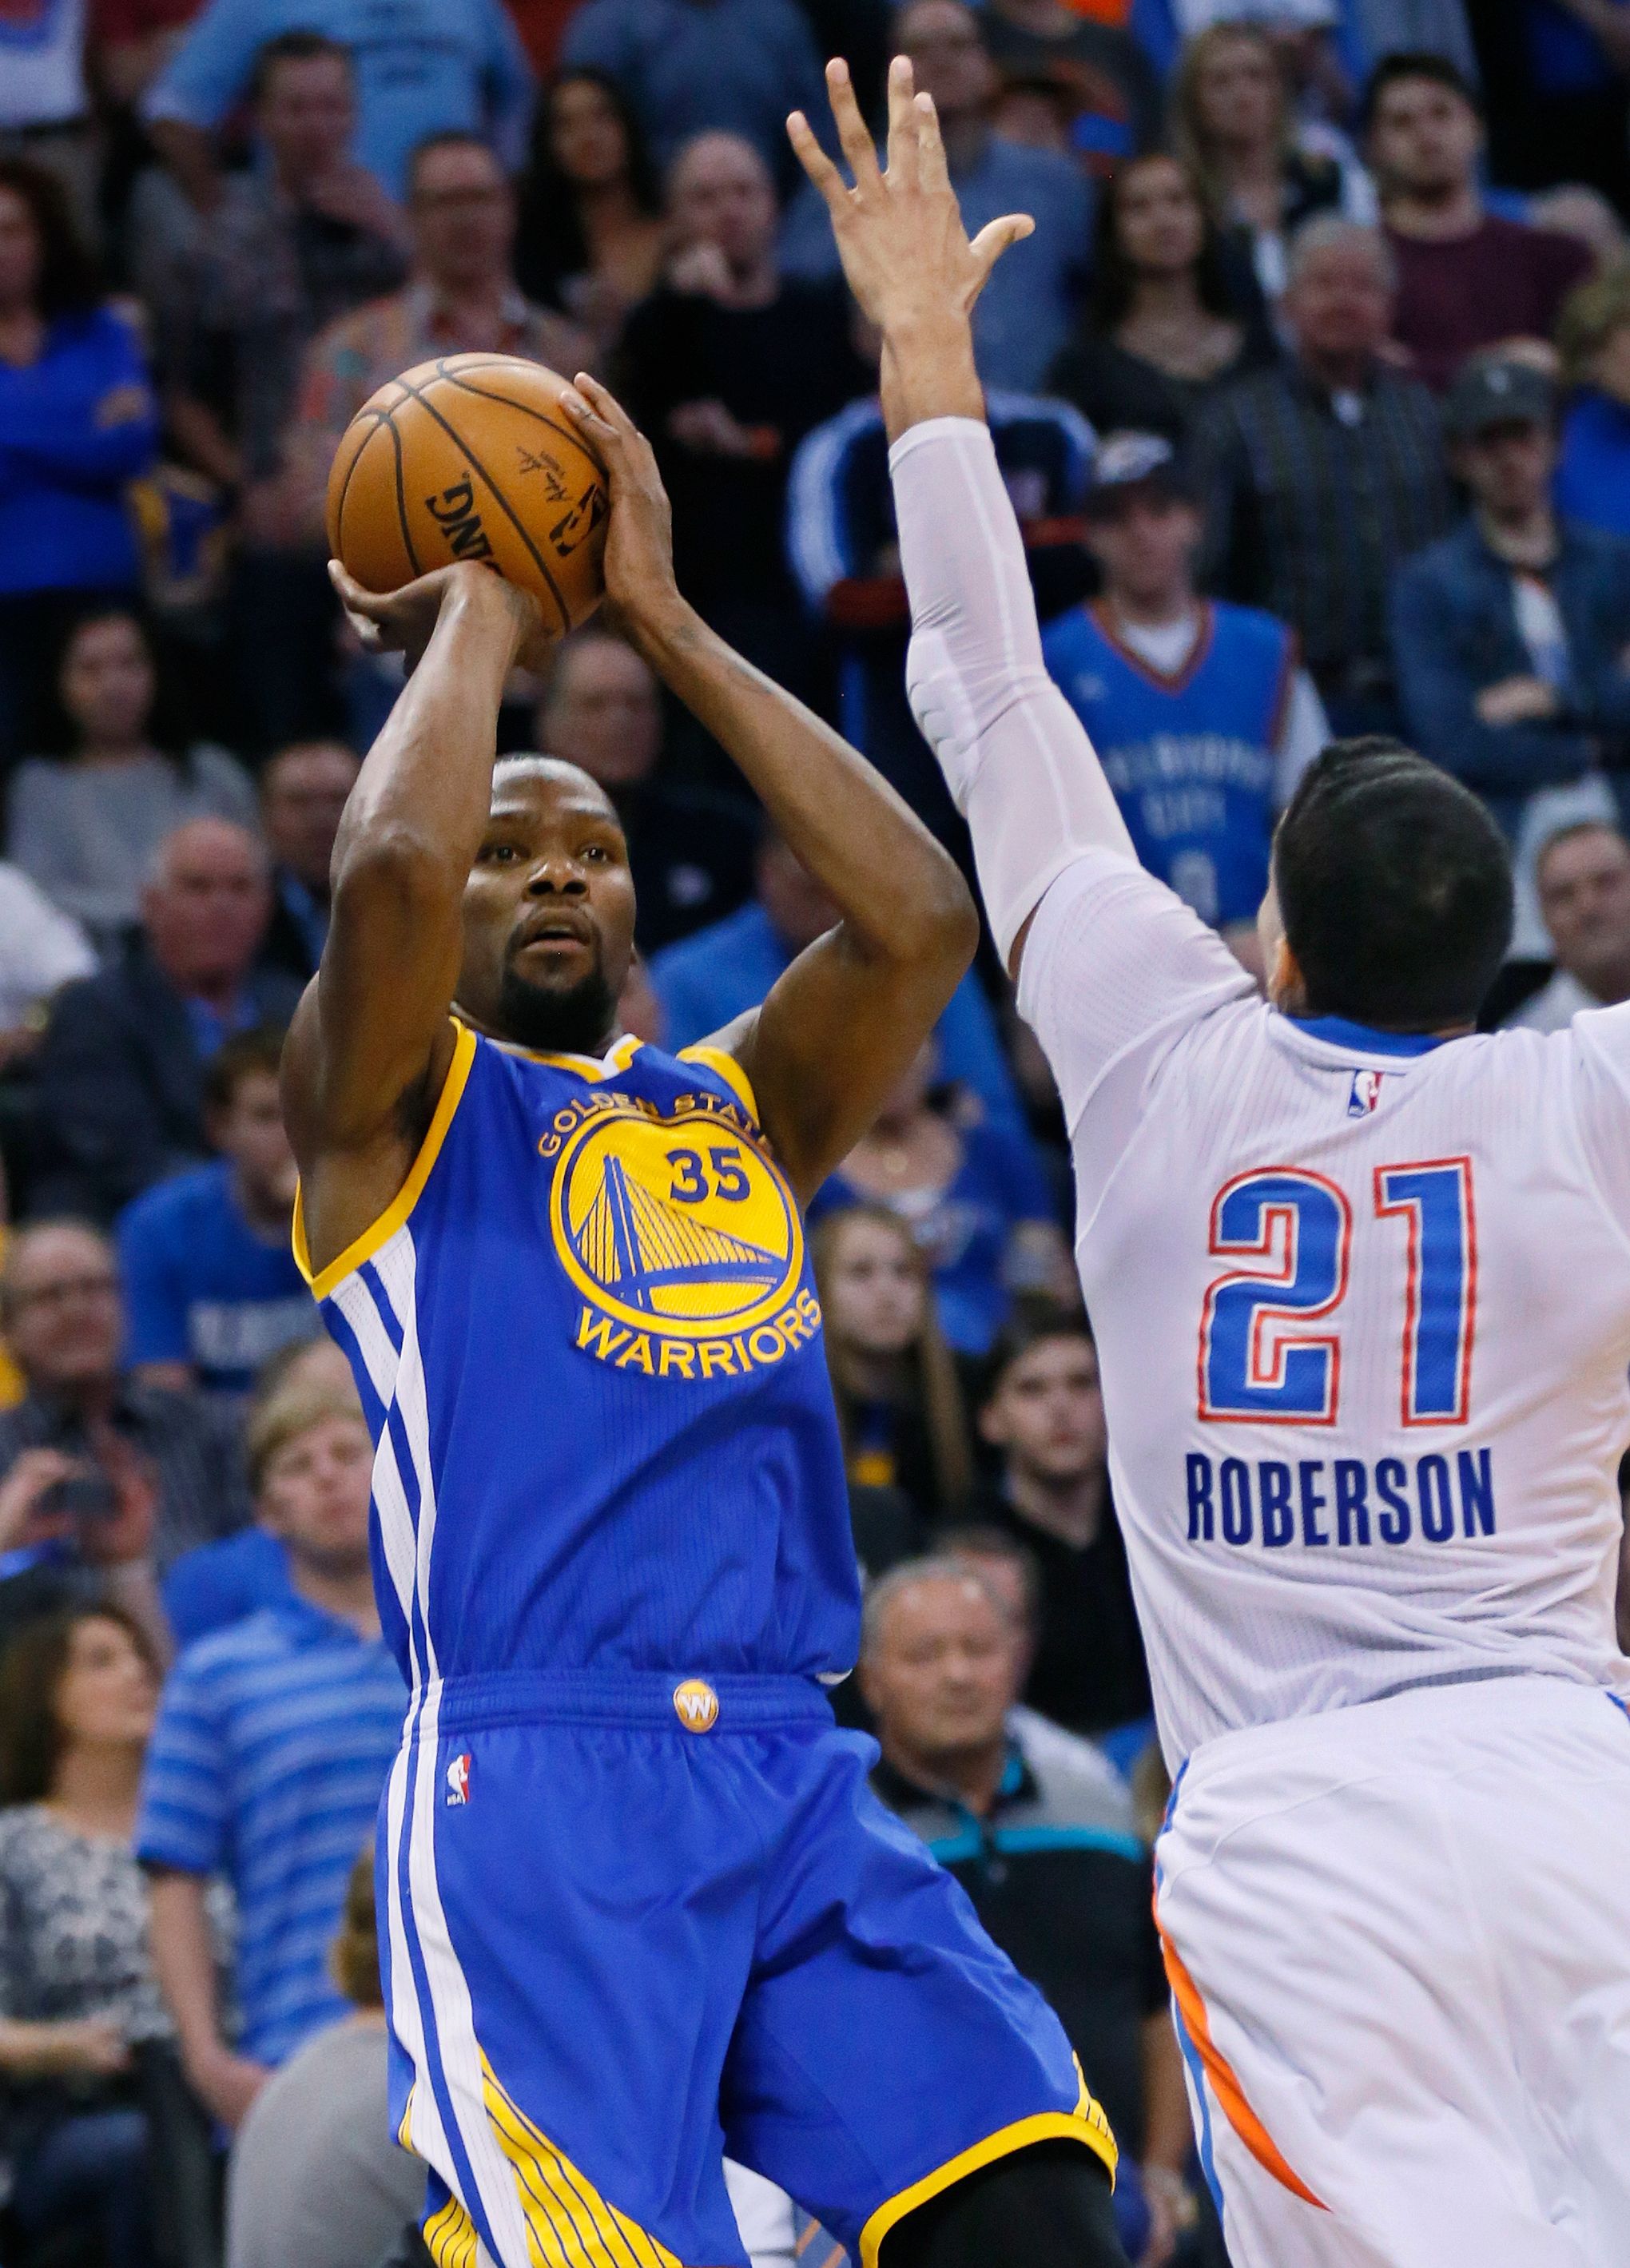 Warriors vs. Thunder 2017: Kevin Durant returns to Oklahoma City